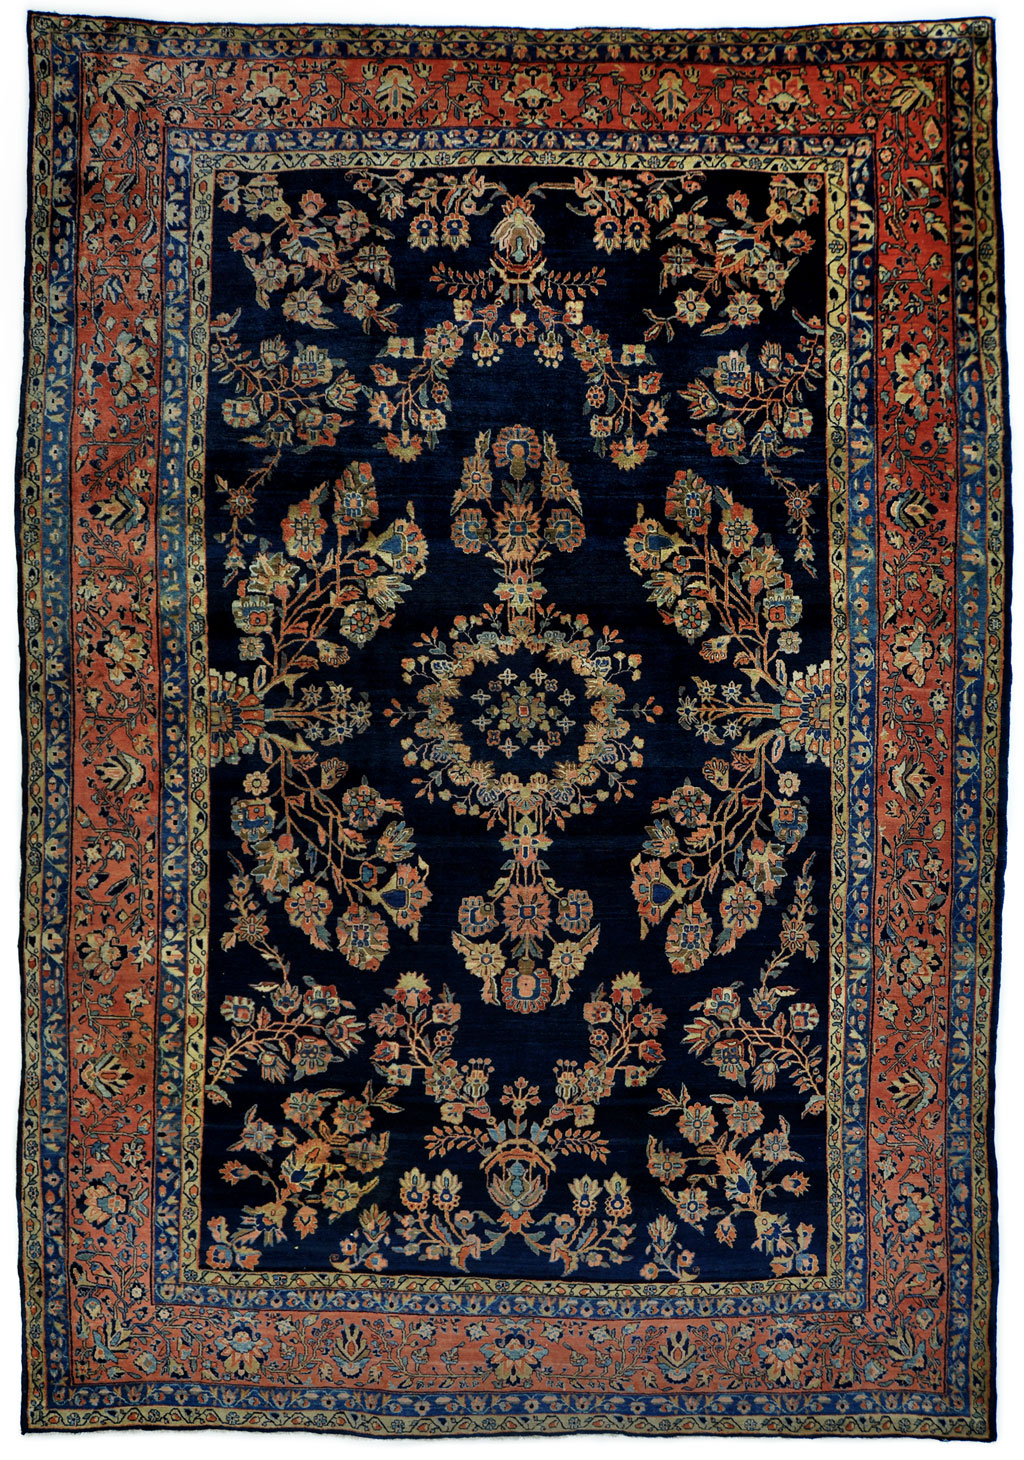 tint Planeet fort Antiek tapijt Sarouck 365x260 cm - Perez vloerkleden voor élk interieur